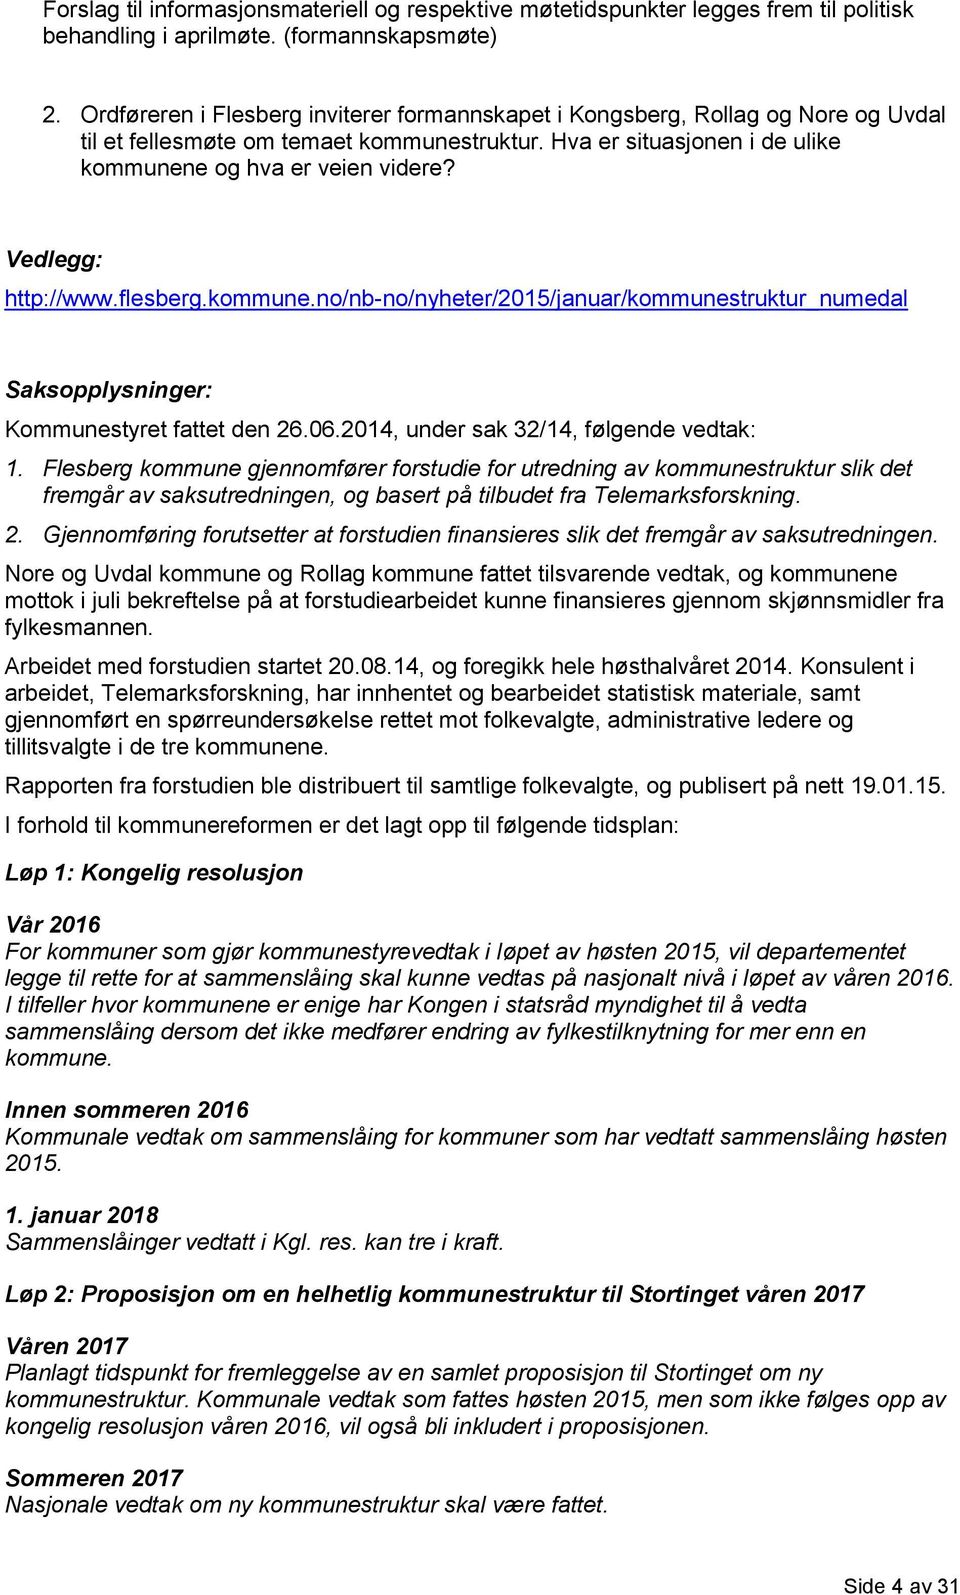 Vedlegg: http://www.flesberg.kommune.no/nb-no/nyheter/2015/januar/kommunestruktur_numedal Saksopplysninger: Kommunestyret fattet den 26.06.2014, under sak 32/14, følgende vedtak: 1.